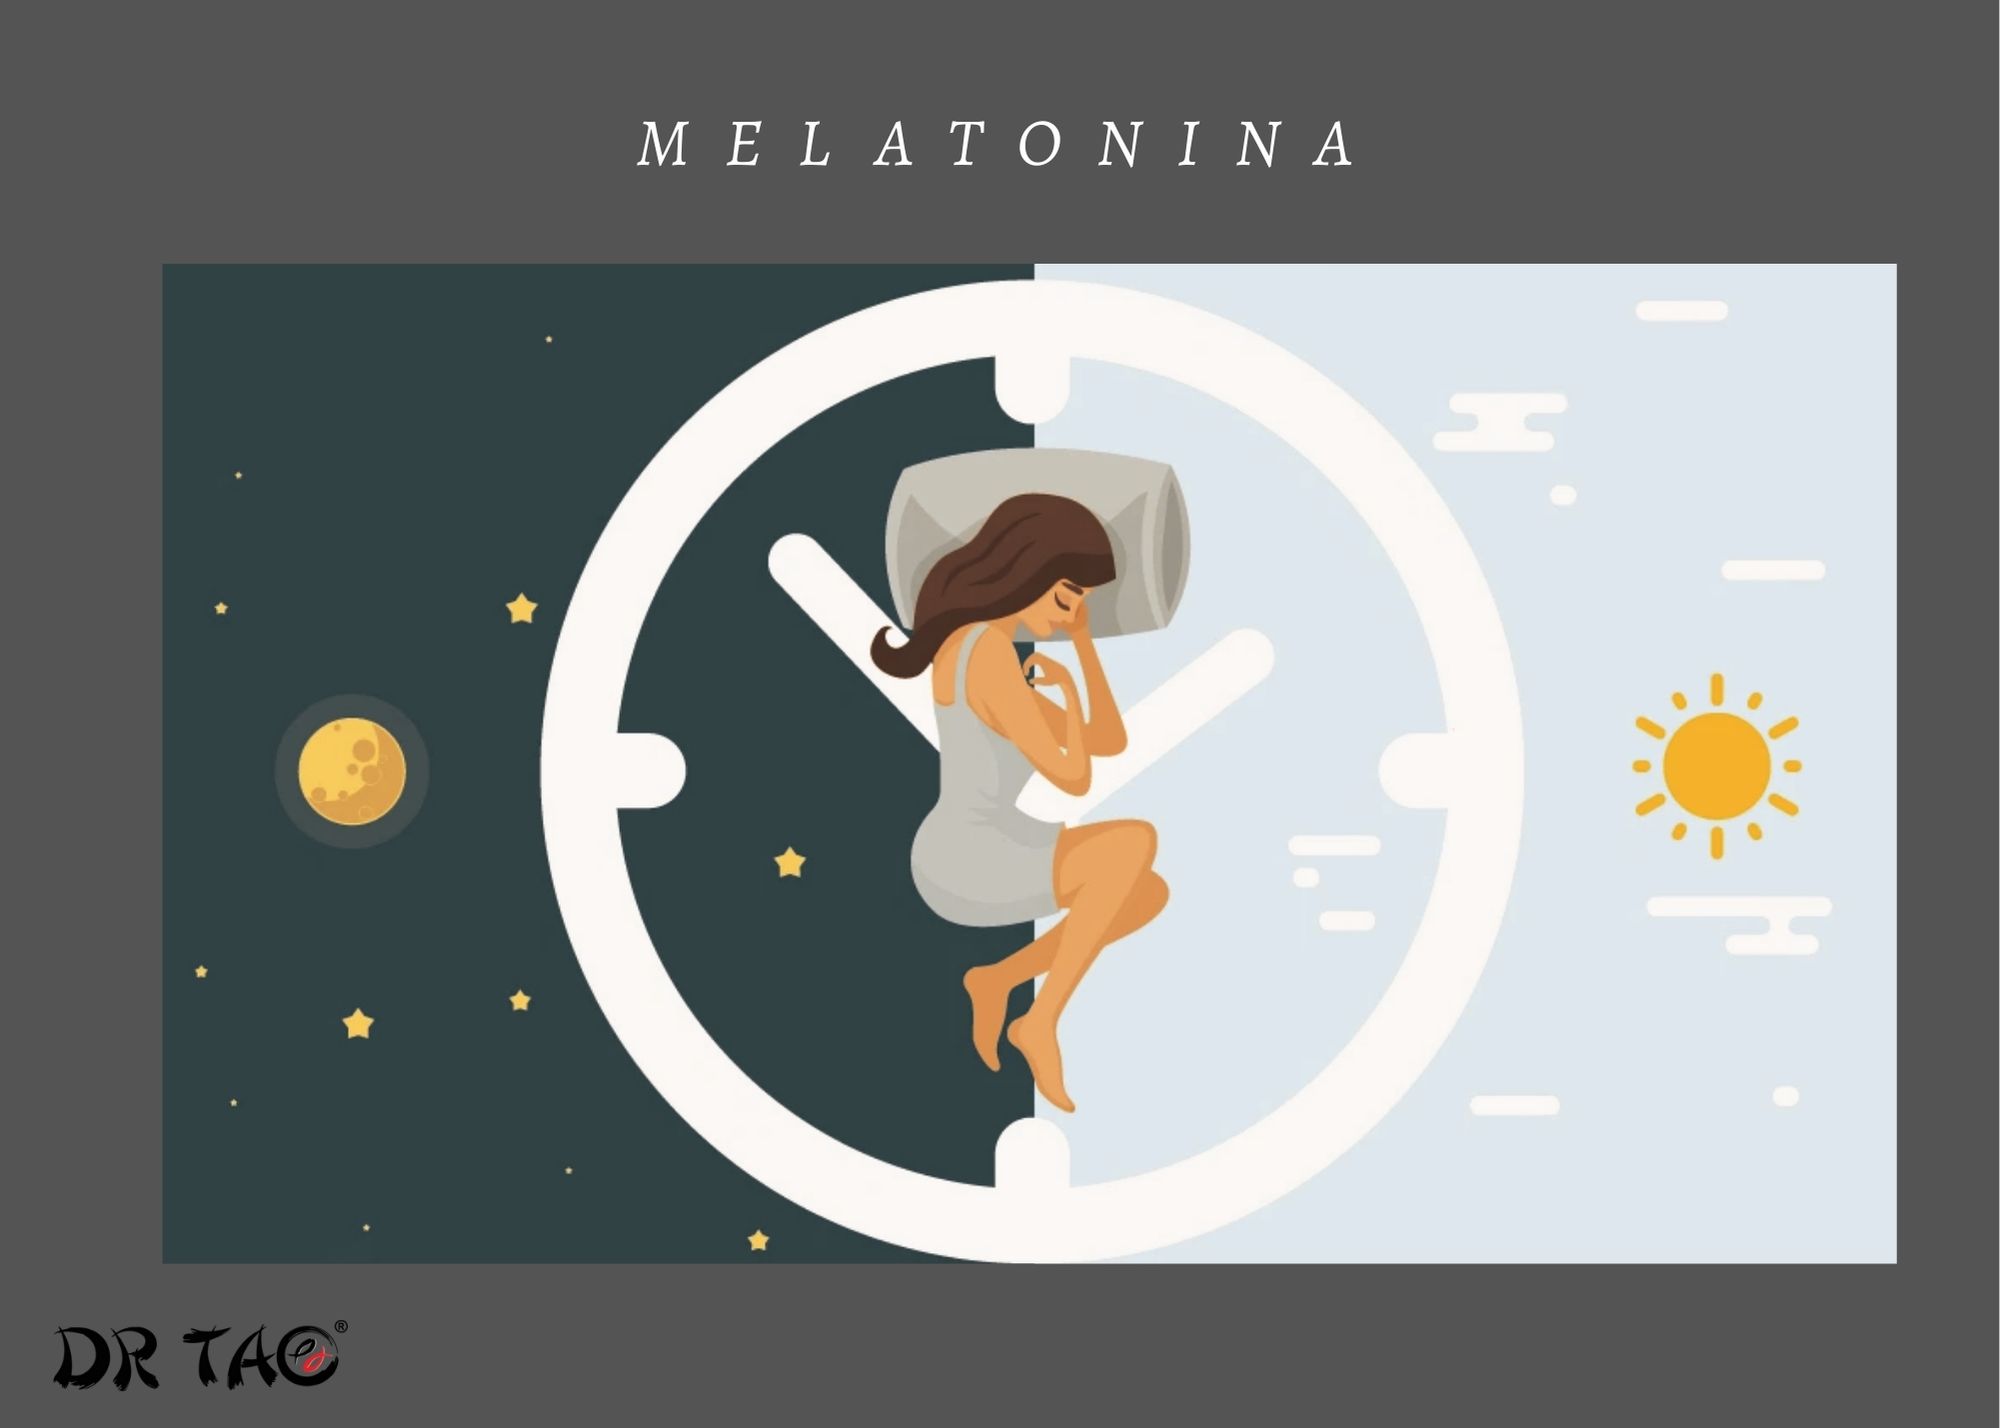 La melatonina exógena avanza significativamente la fase del ritmo del sueño/vigilia y evita el sueño retardado.